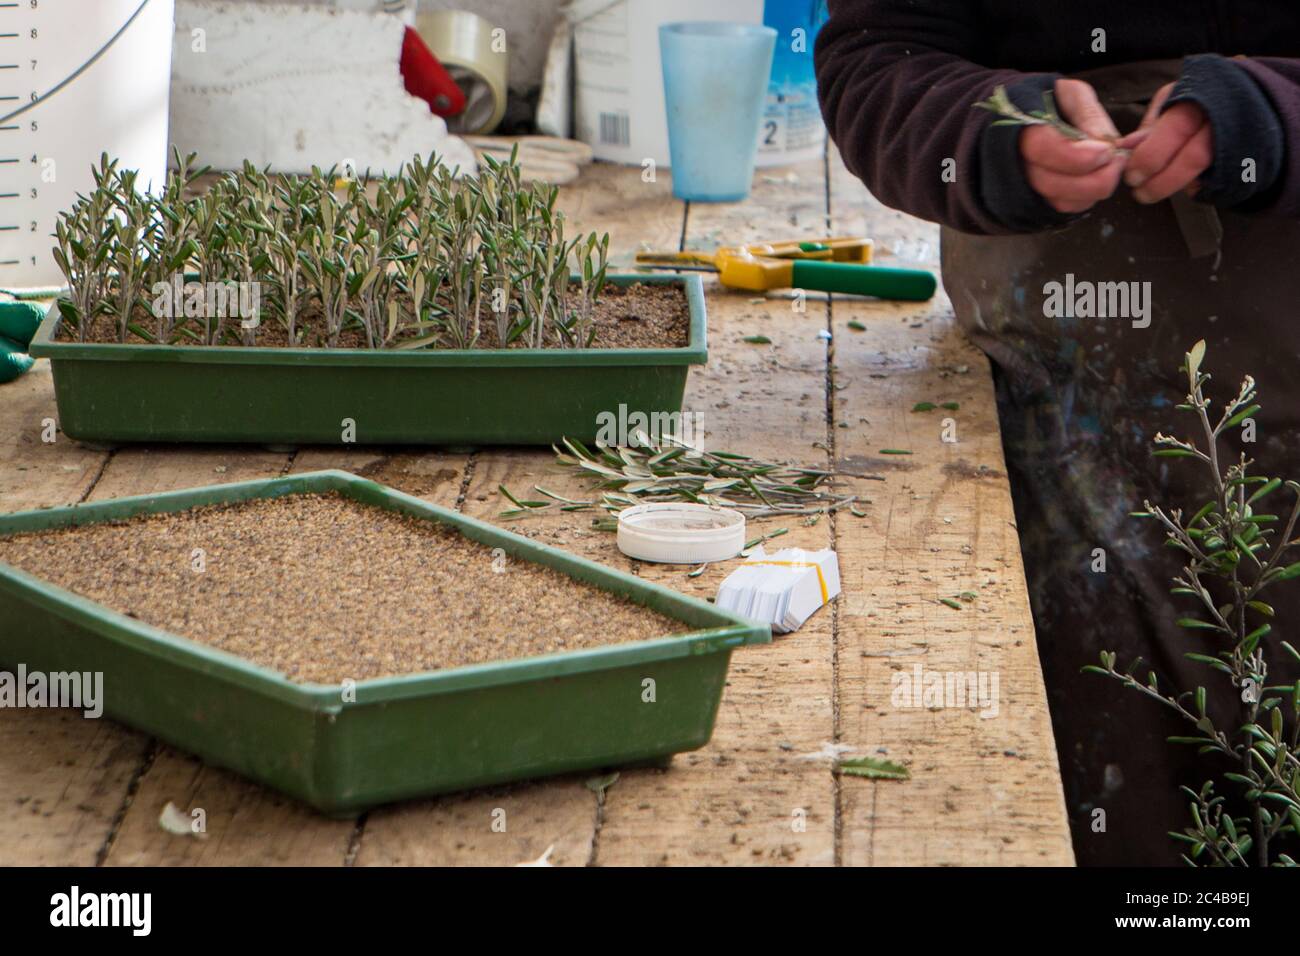 Propagazione di pianta. Un lavoratore di vivaio prende i tagli delle piante native e li pianta in vassoi per sviluppare le radici Foto Stock